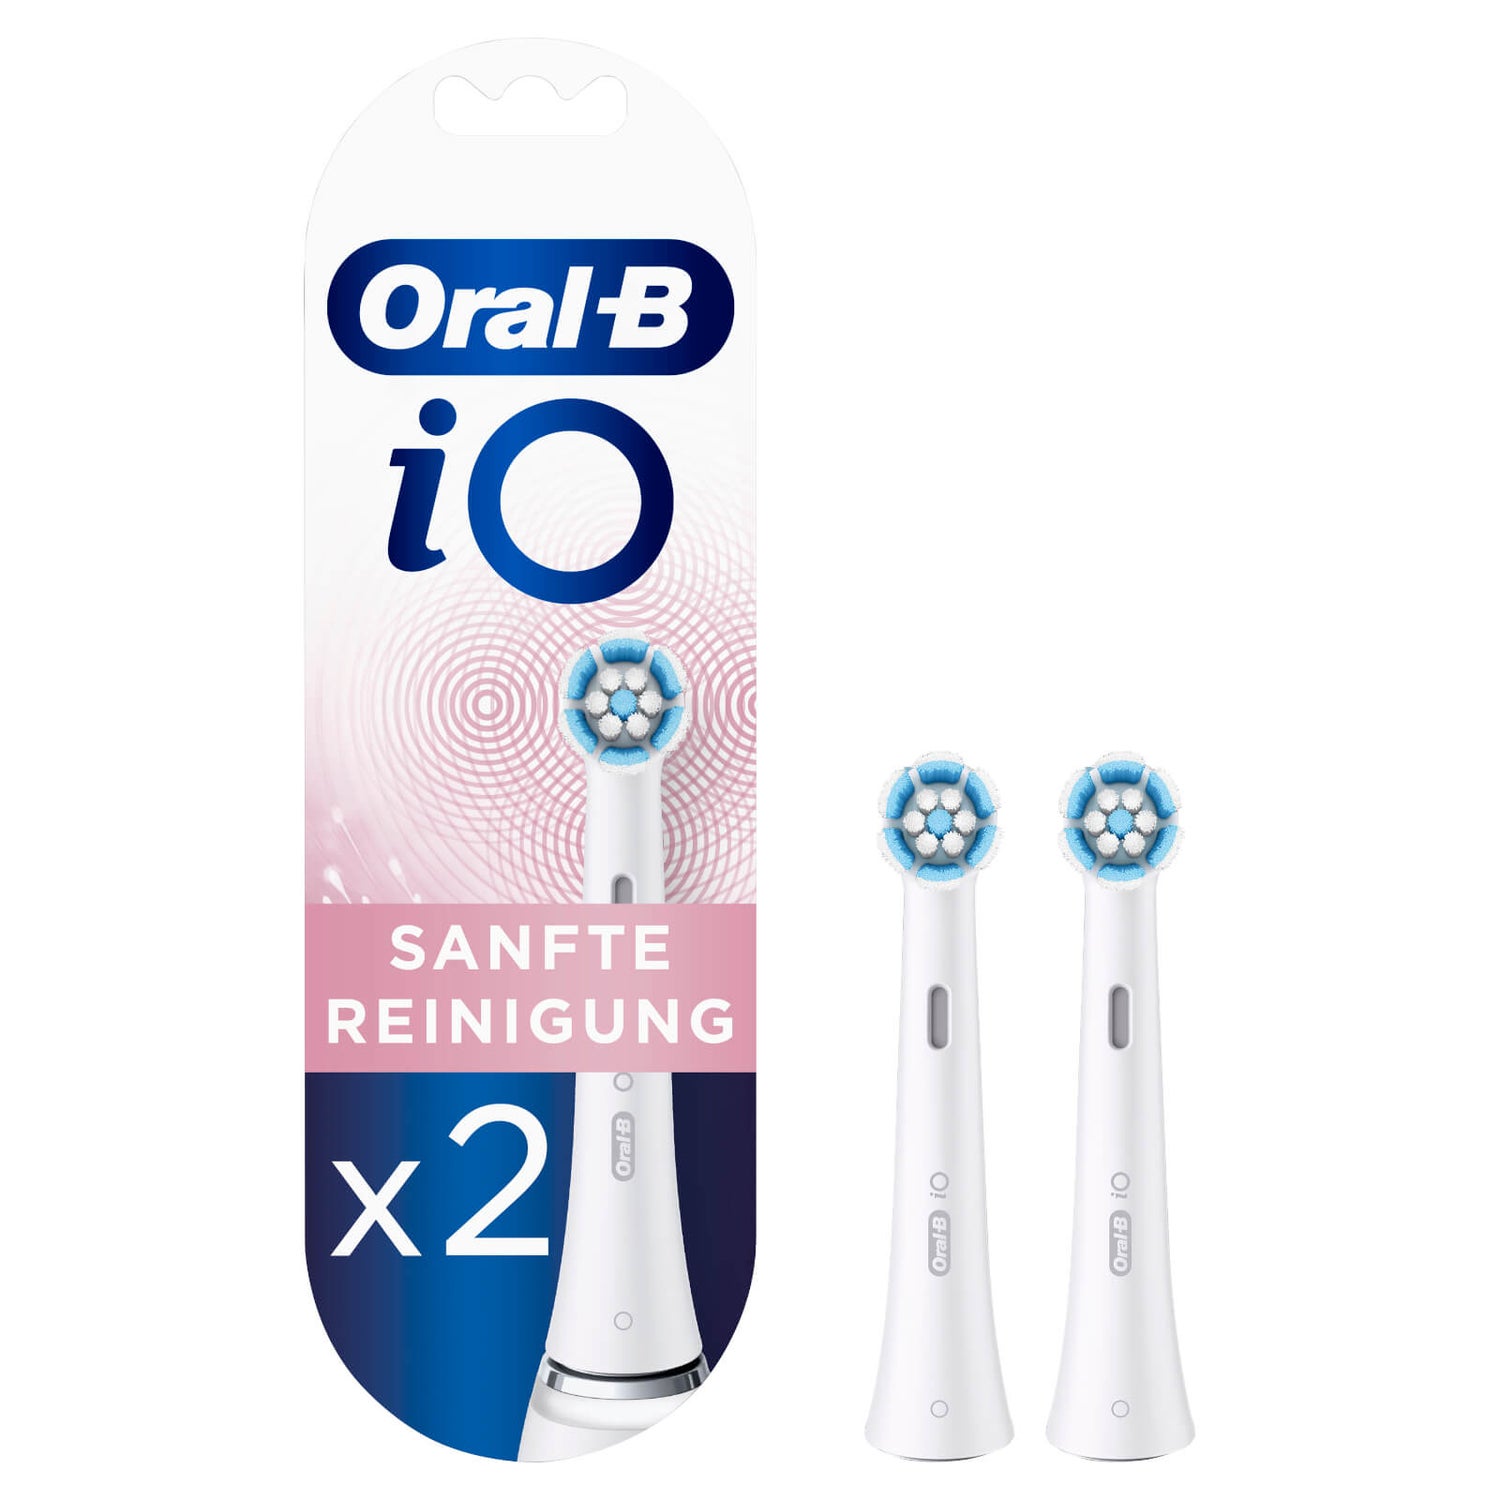 Oral-B iO Sanfte Reinigung Aufsteckbürsten, 2 Stück